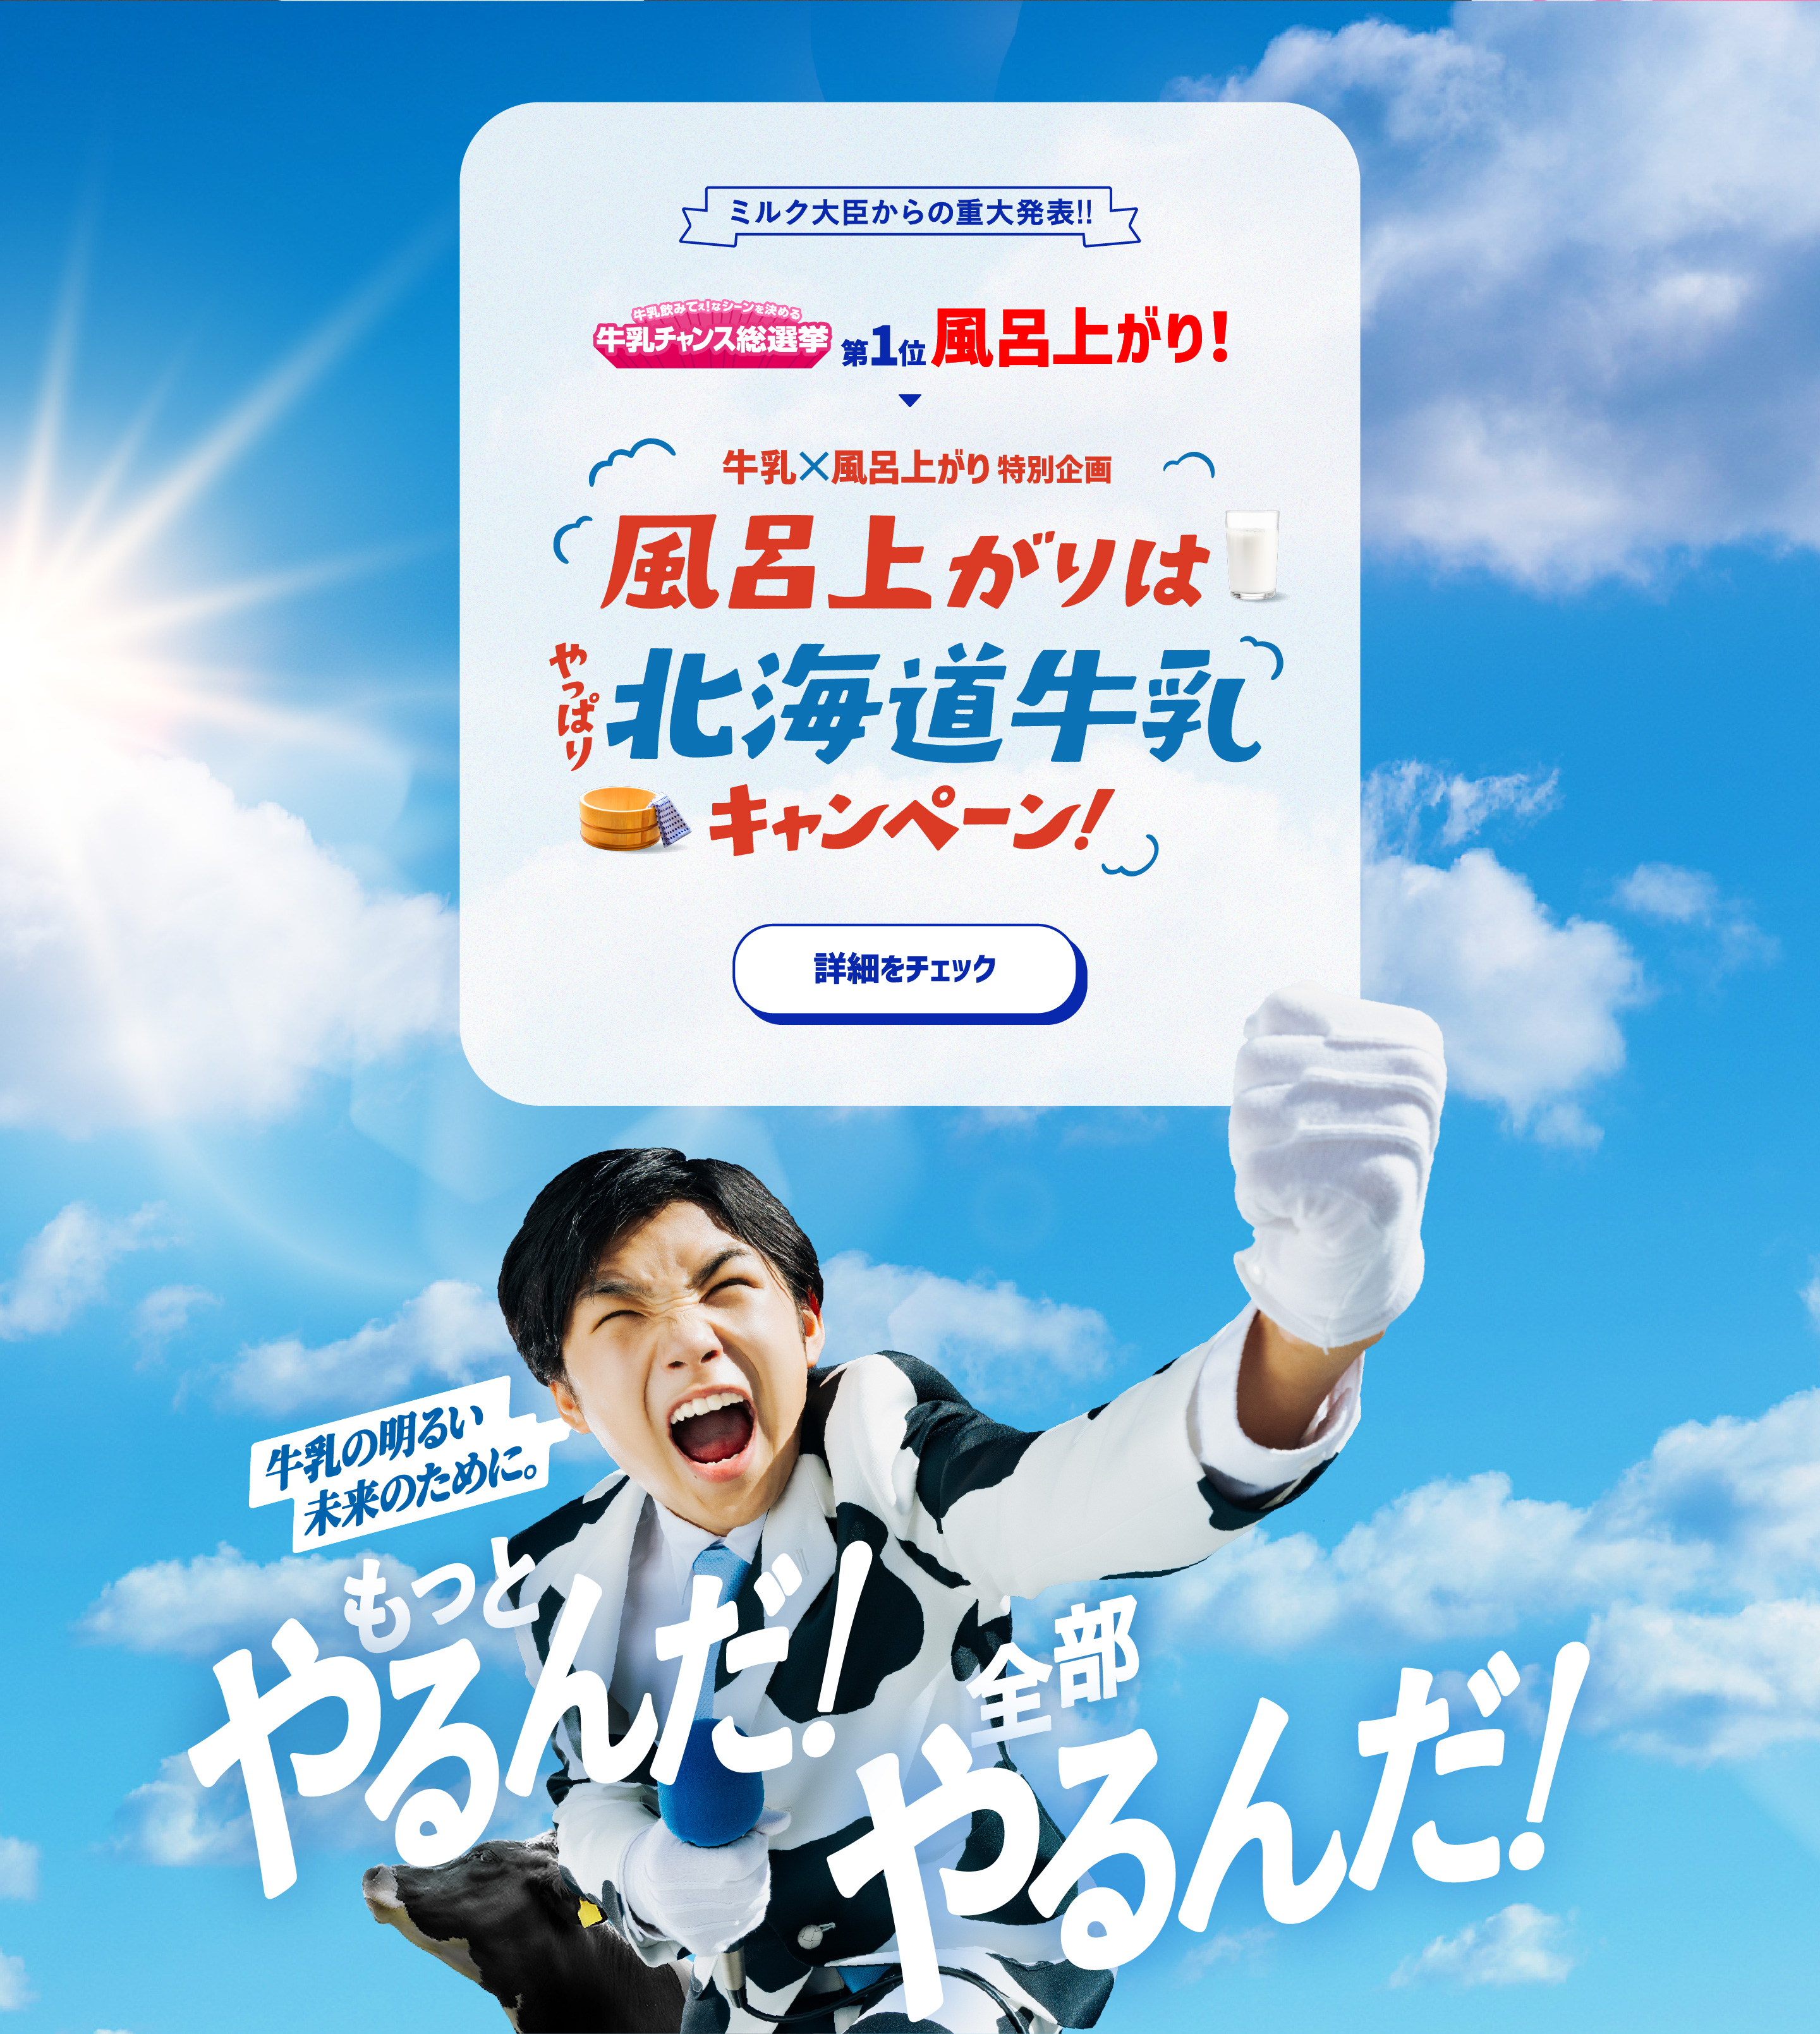 【ミルク大臣からの重大発表!!】牛乳×風呂上がり特別企画。「風呂上がりはやっぱり牛乳キャンペーン！